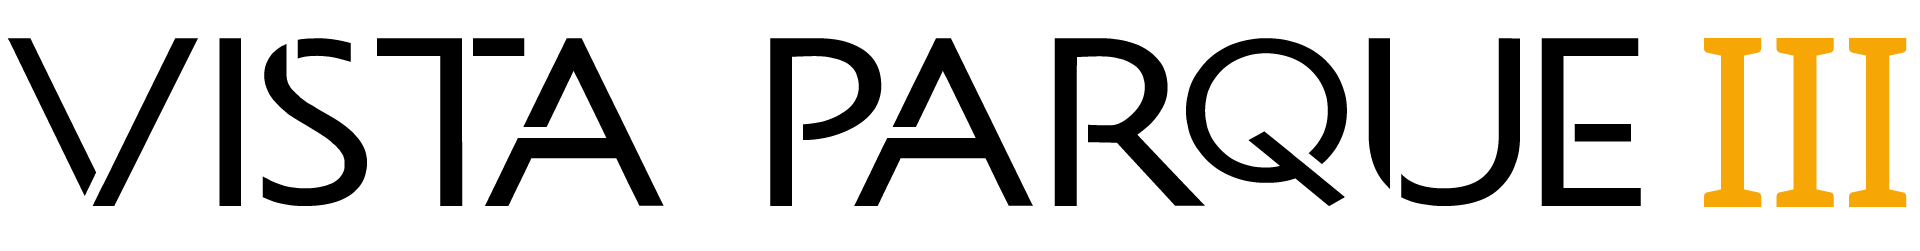 Logo Vista Parque III